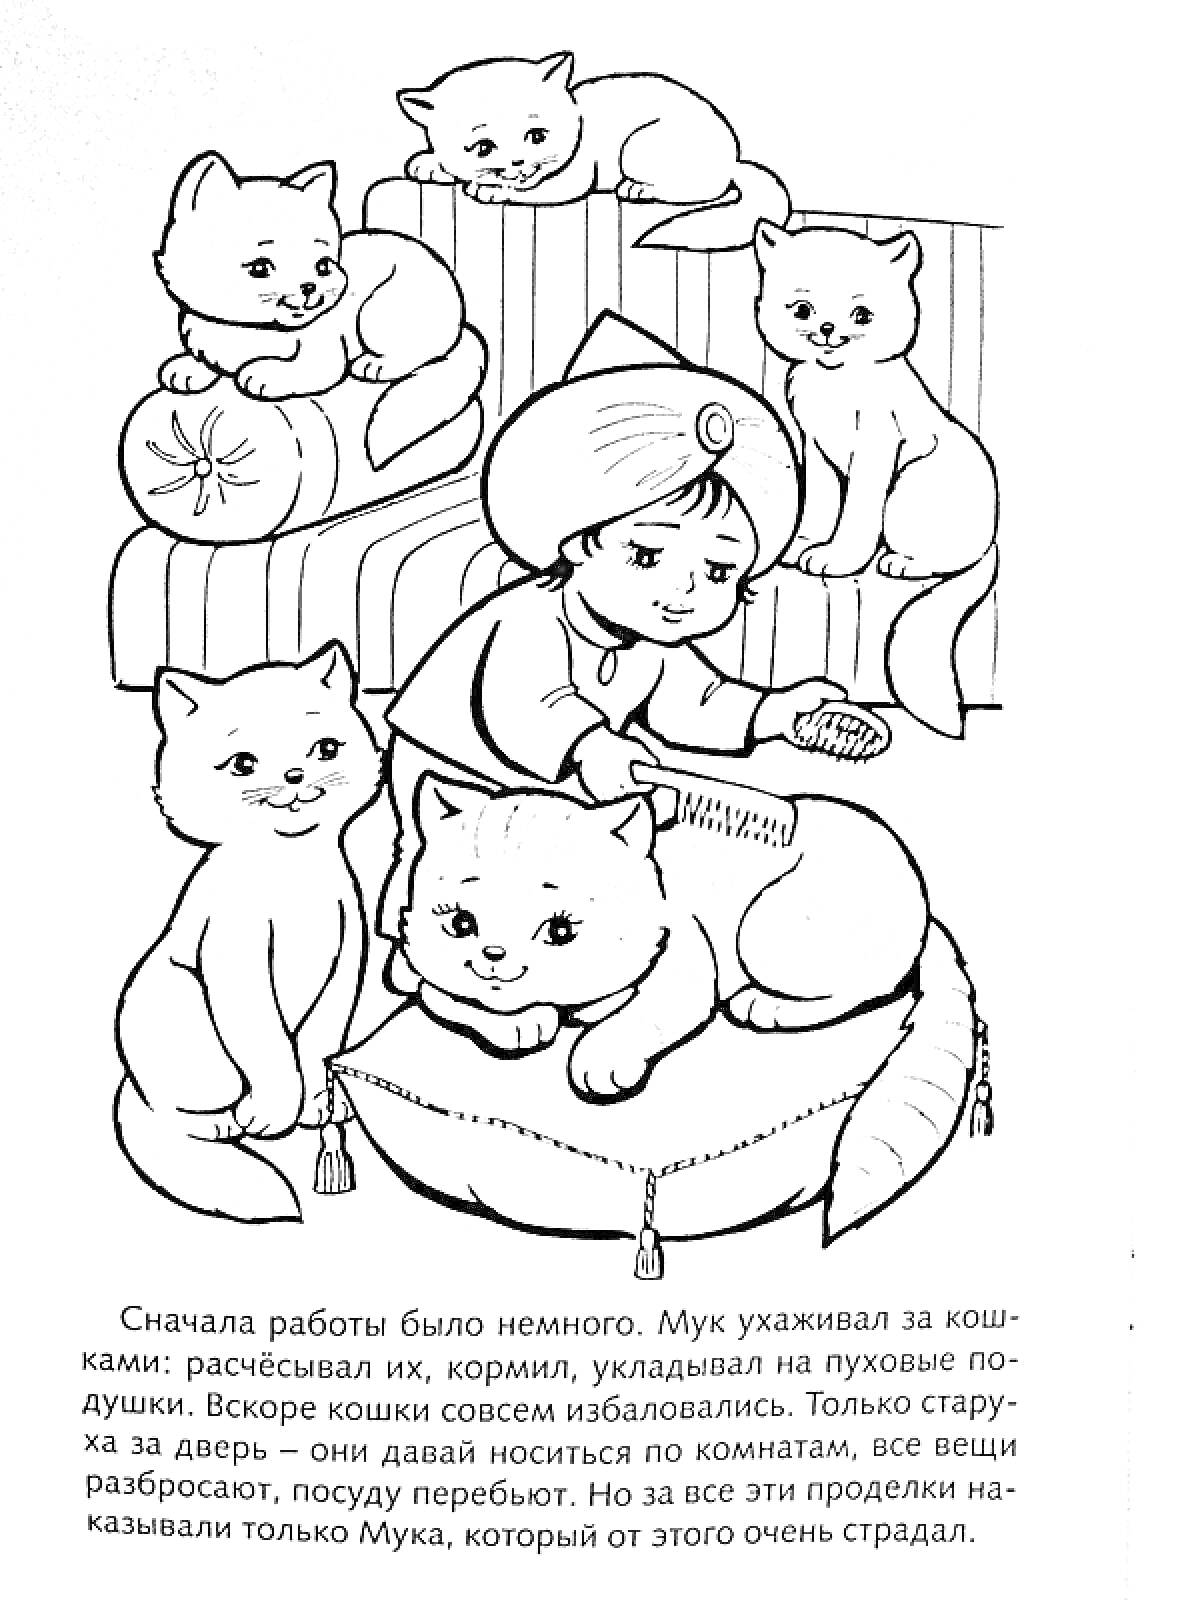 Мальчик с кошками на подушках, сидящий на полу, расчесывает кошку, текст под картинкой.